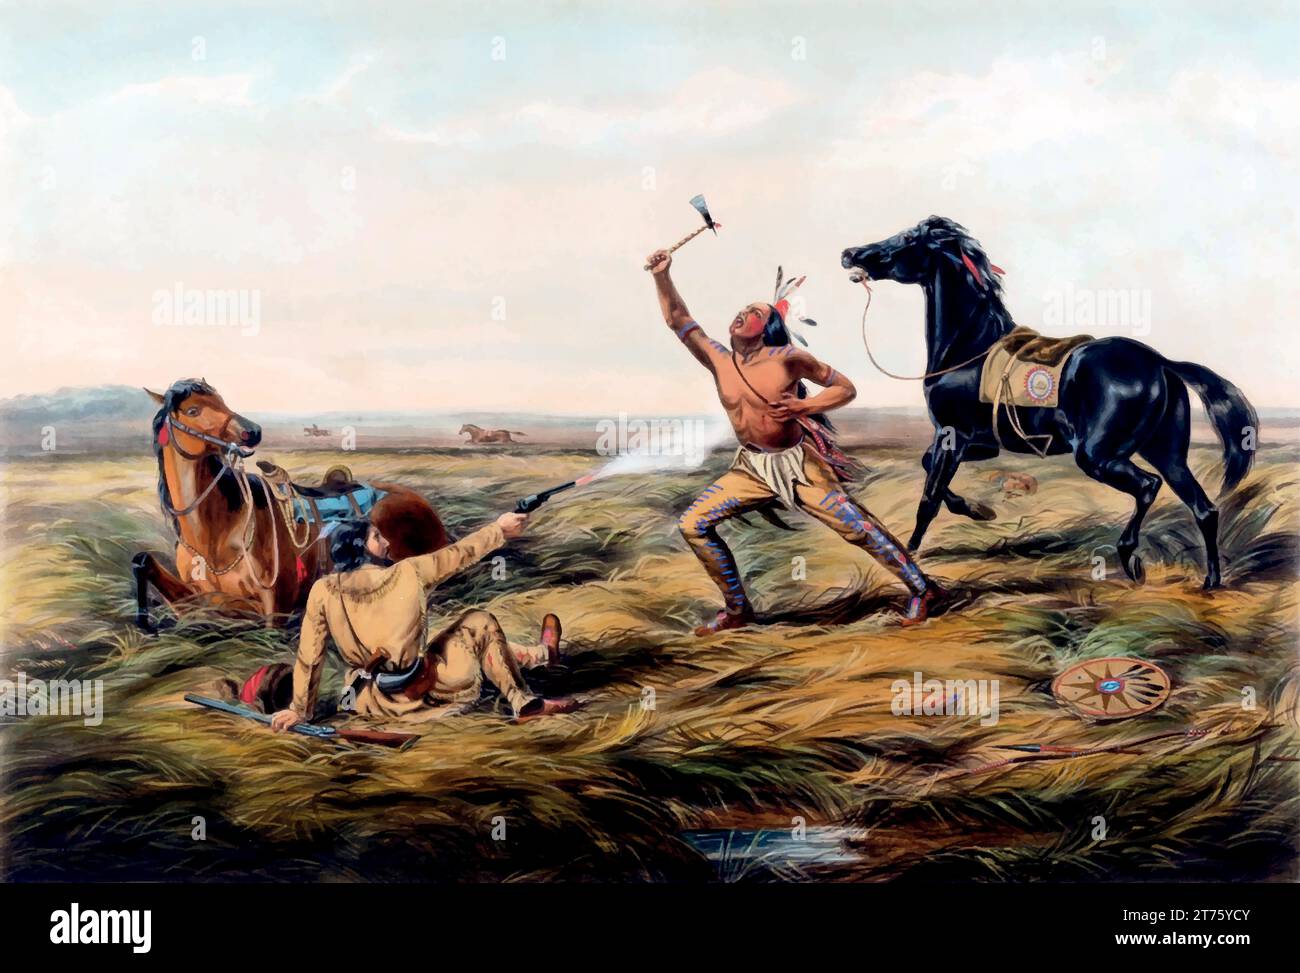 USA, 1865 The Last Shot Indian et Scout. Currier & Ives. Gravure. Guerre de Sécession, soldat de l'Union, image emblématique symbolise les sacrifices, Illustration de Vecteur